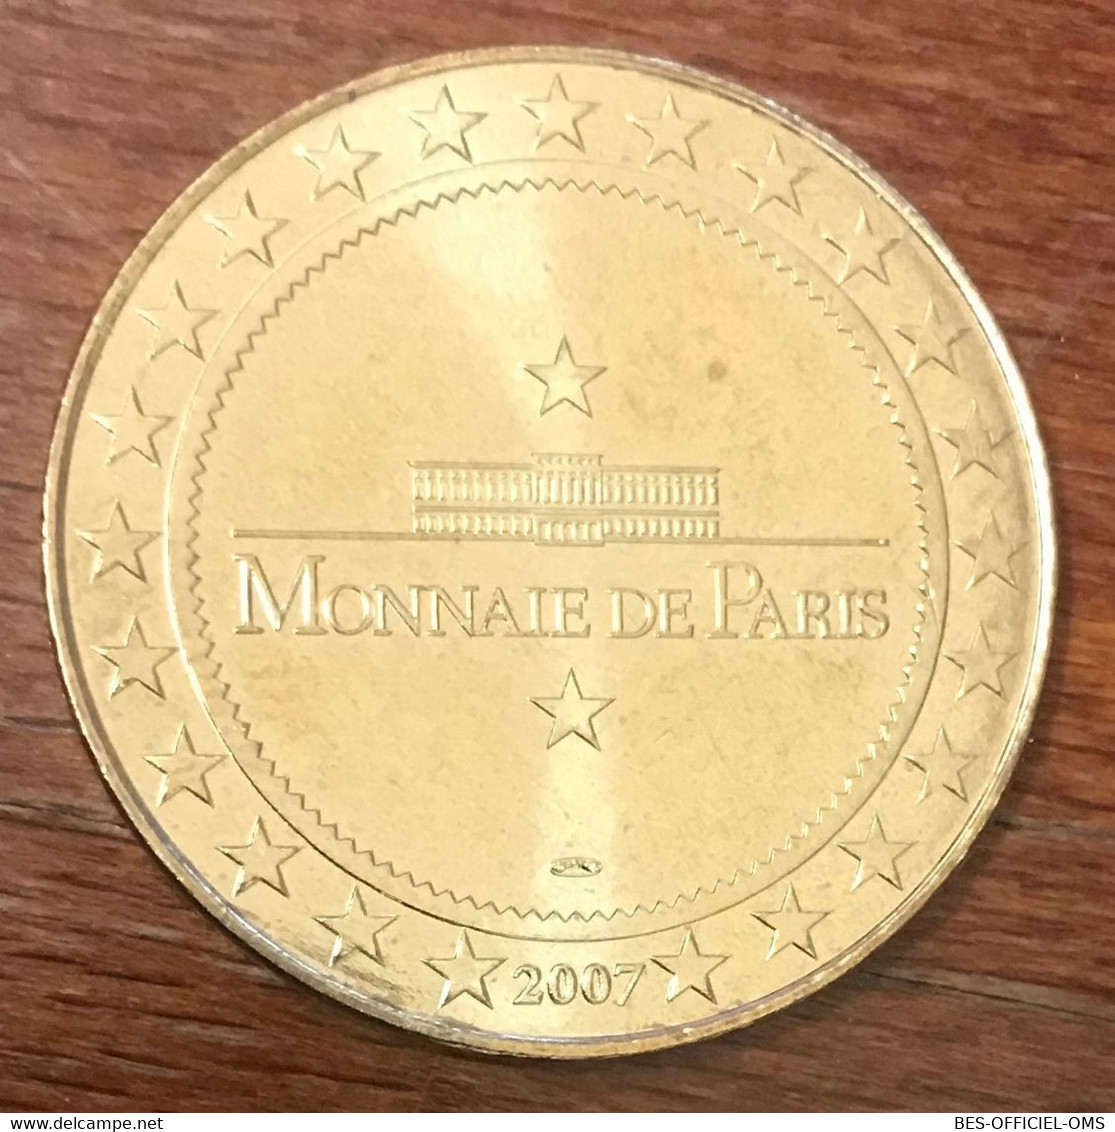 06 ANTIBES MARINELAND ORQUES MDP 2007 MINI MÉDAILLE SOUVENIR MONNAIE DE PARIS JETON TOURISTIQUE TOKEN MEDALS COINS - 2007